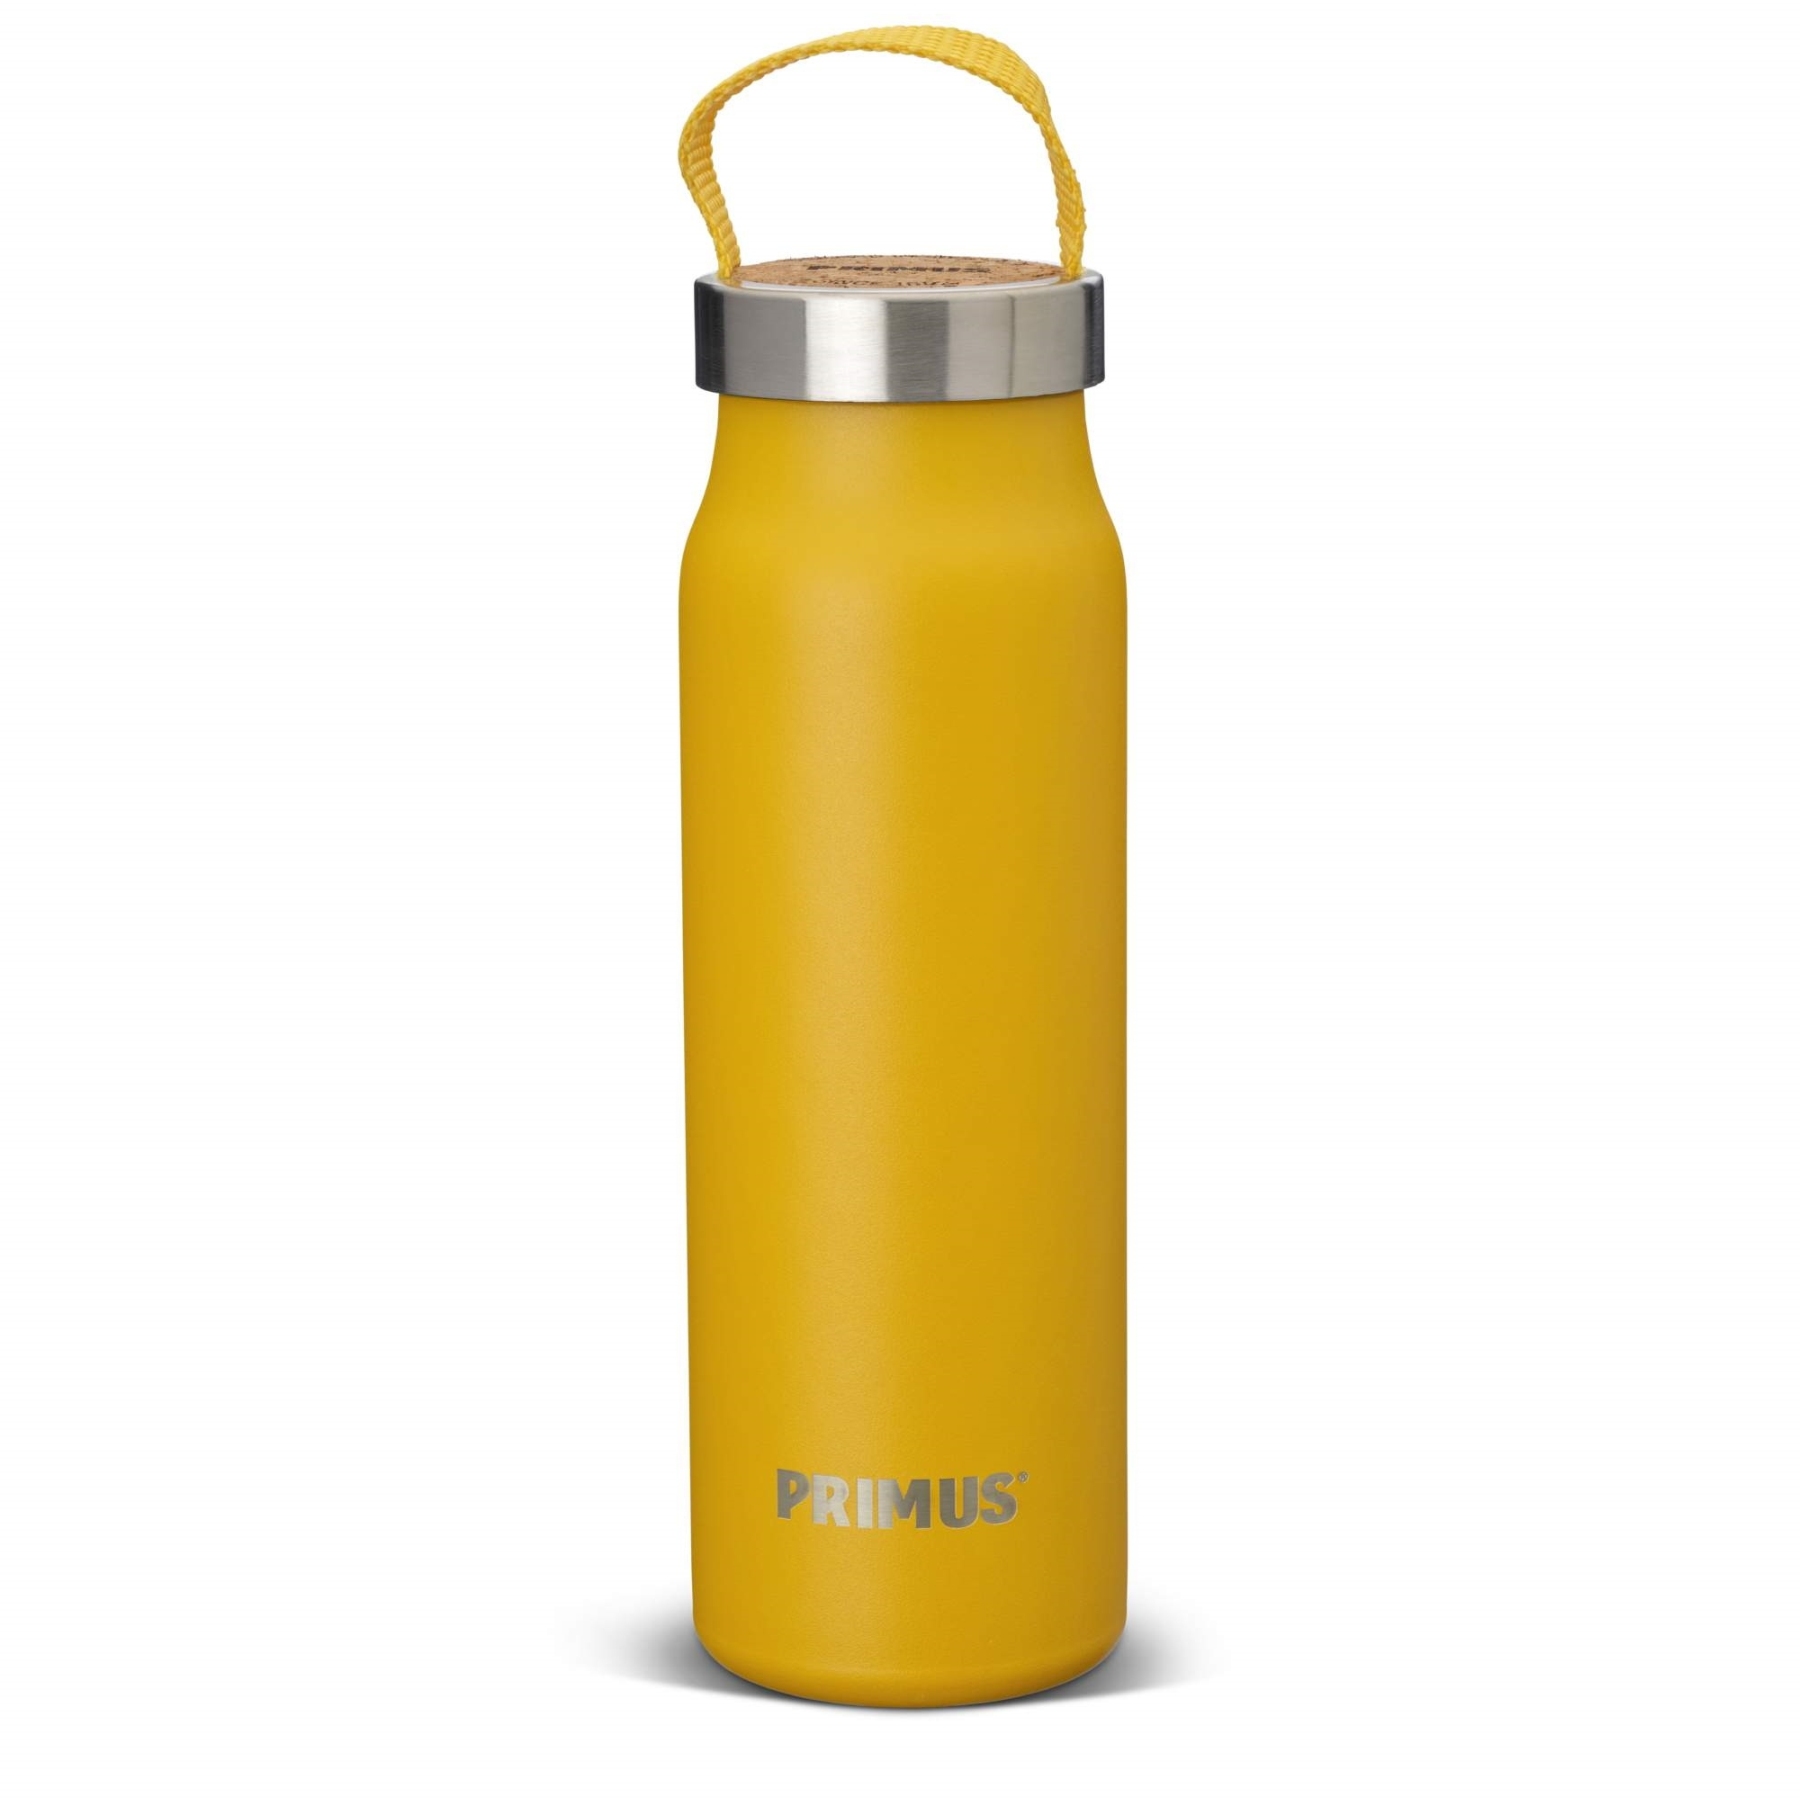 Productfoto van Primus Klunken Vacuum Bottle 0.5 L - yellow